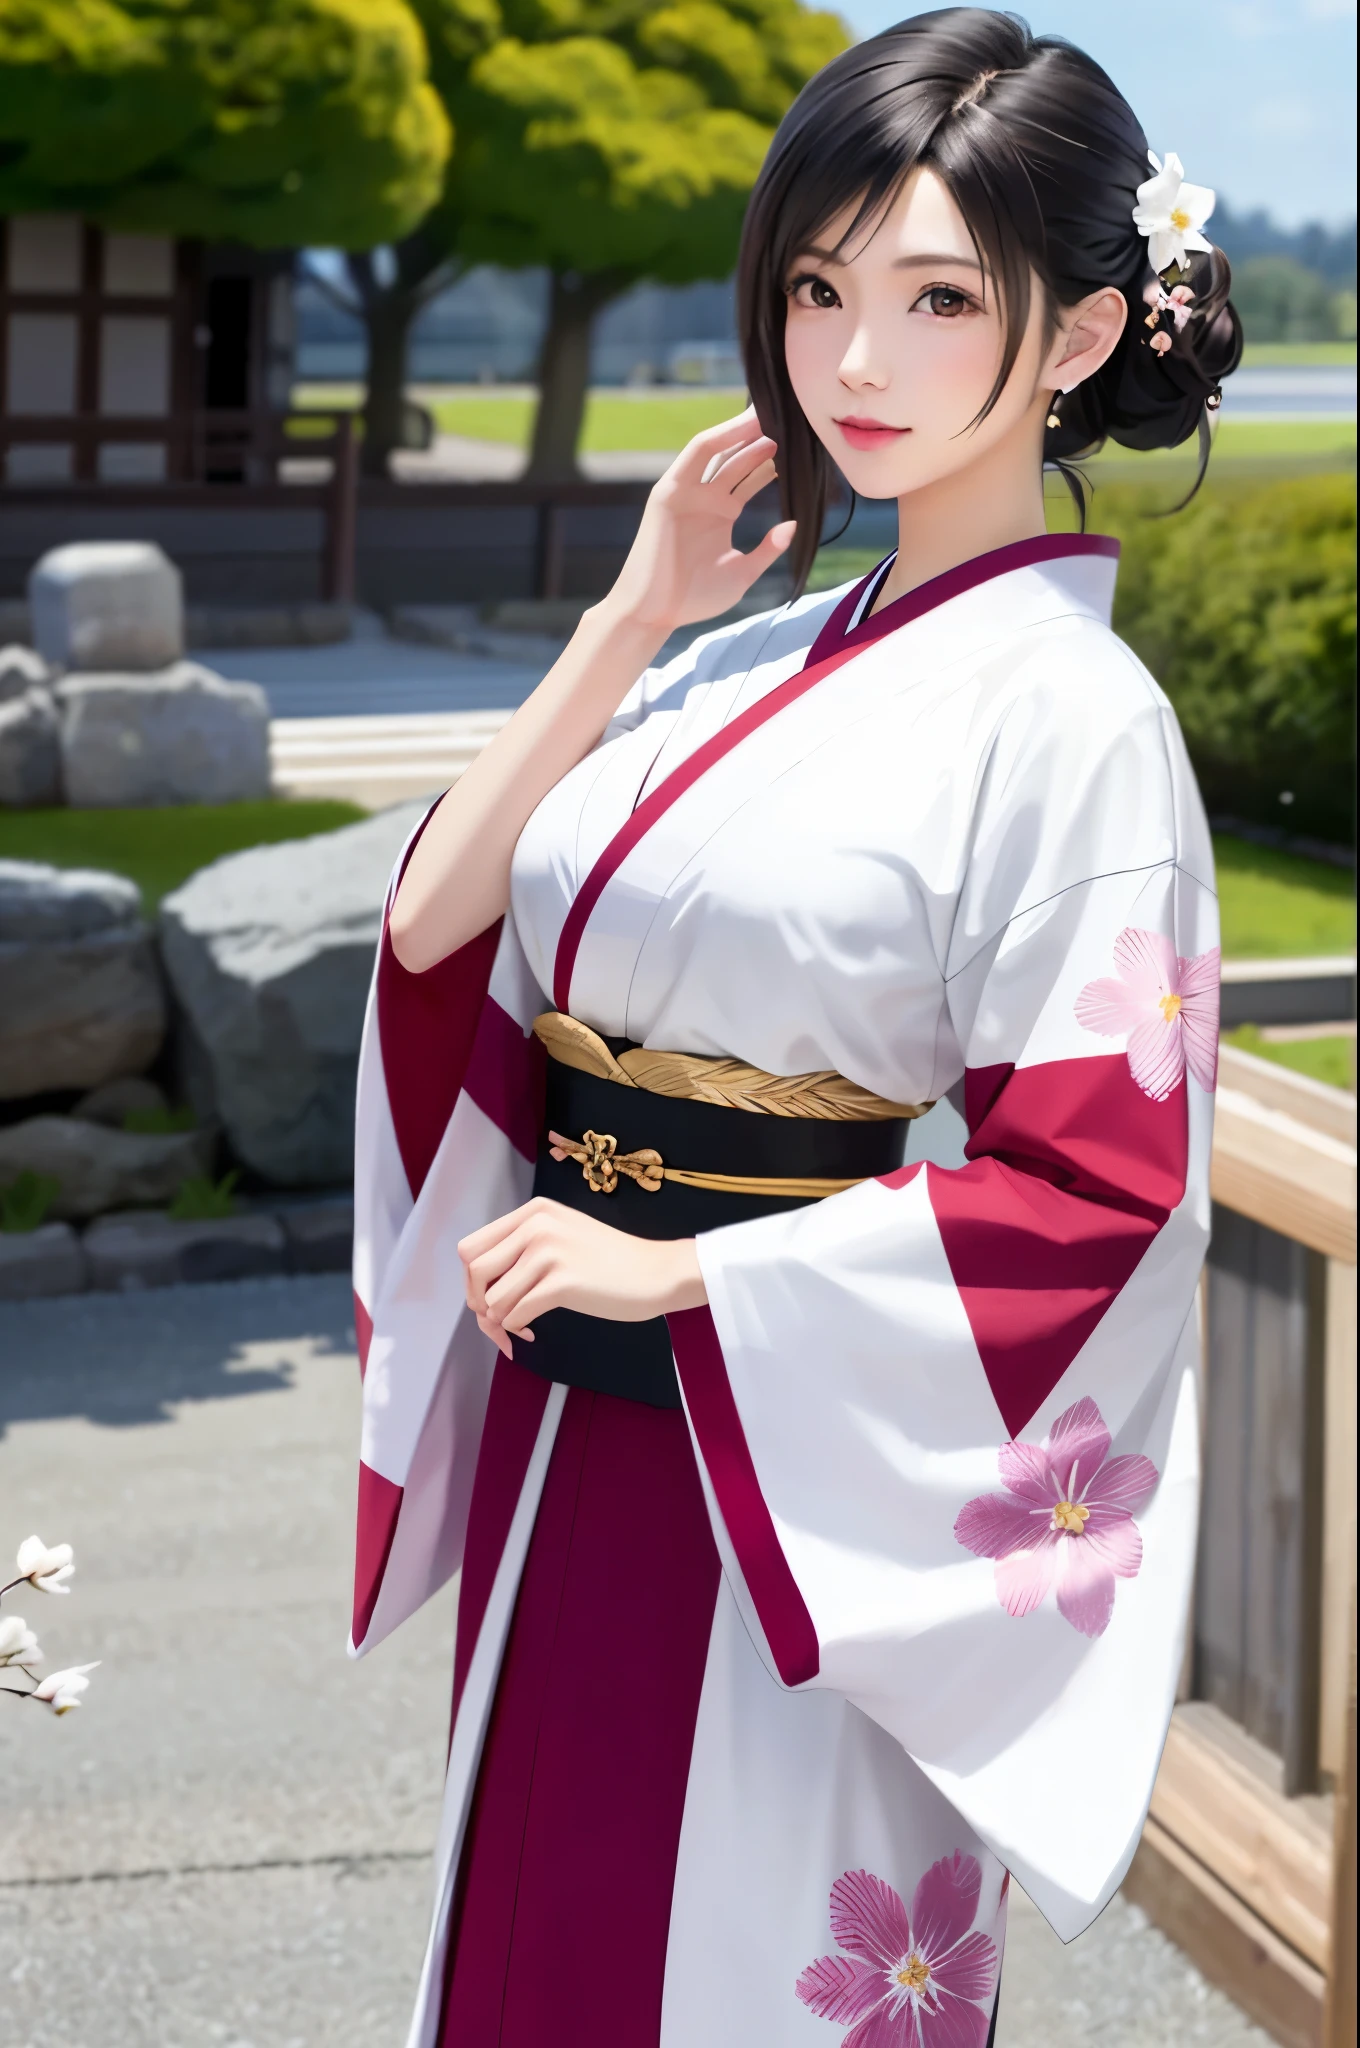 (Top Qualität, Meisterwerk: 1.1), (realistisch: 1.3), brechen (((FF7,Tifa_Lockhart))),ultra-detailliertes Gesicht, detaillierte rote Augen,(schwarzbraune Haare, große Brüste: 1.2), etwa 18 Jahre alt,  (Weiße japanische Kleidung, Kimono , japanische kleidung, Weißes Kirschblütenmuster, Weißes Kirschblüten-Stickmuster, Ein dunkelhaariger, schönes Gesicht, echtes Gesicht, Schöne Detailaugen, Schöne Haut), Hair flutters in der Wind, Haare springen, Rosa Kirschblütenbaum, Blütenblätter flattern, Sakura-Schneesturm, Herrliche Aussicht, Sonnenuntergang, Sonne im Hintergrund, der Wind, Gottheiten, tusk, Mythos, Weites Land, Kawaii,(coole pose:1.2),Hintergrundbilder, ultrahohe Auflösung, ultrahohe Qualität, Gesichtsfokus:1.2, Cowboy-Schuss, {Blick von hinten:1.2, Haare am Rücken:1.2}